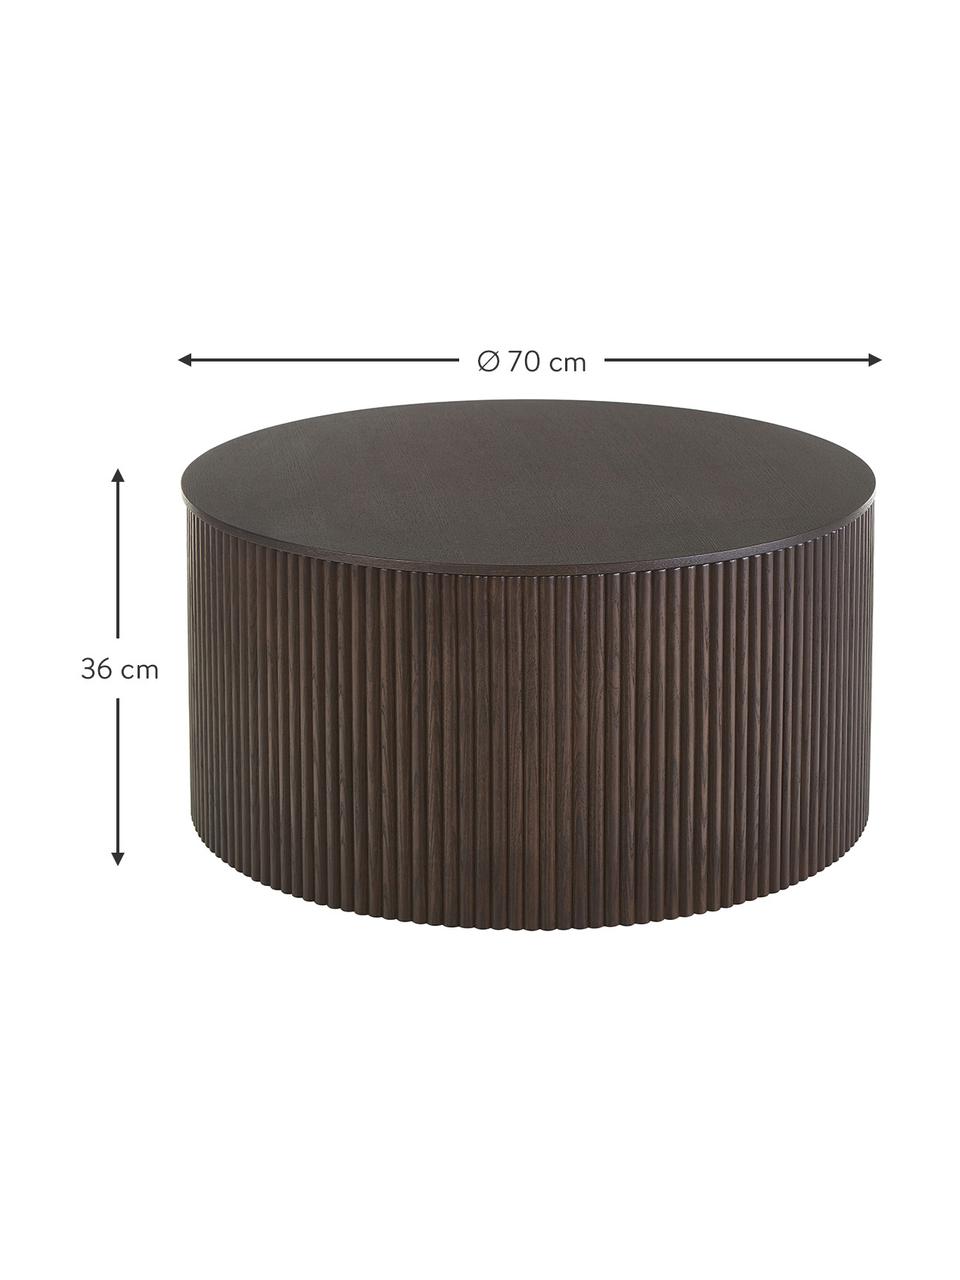 Table basse ronde avec rangement Nele, MDF (panneau en fibres de bois à densité moyenne) avec placage en frêne, Noir, Ø 70 cm